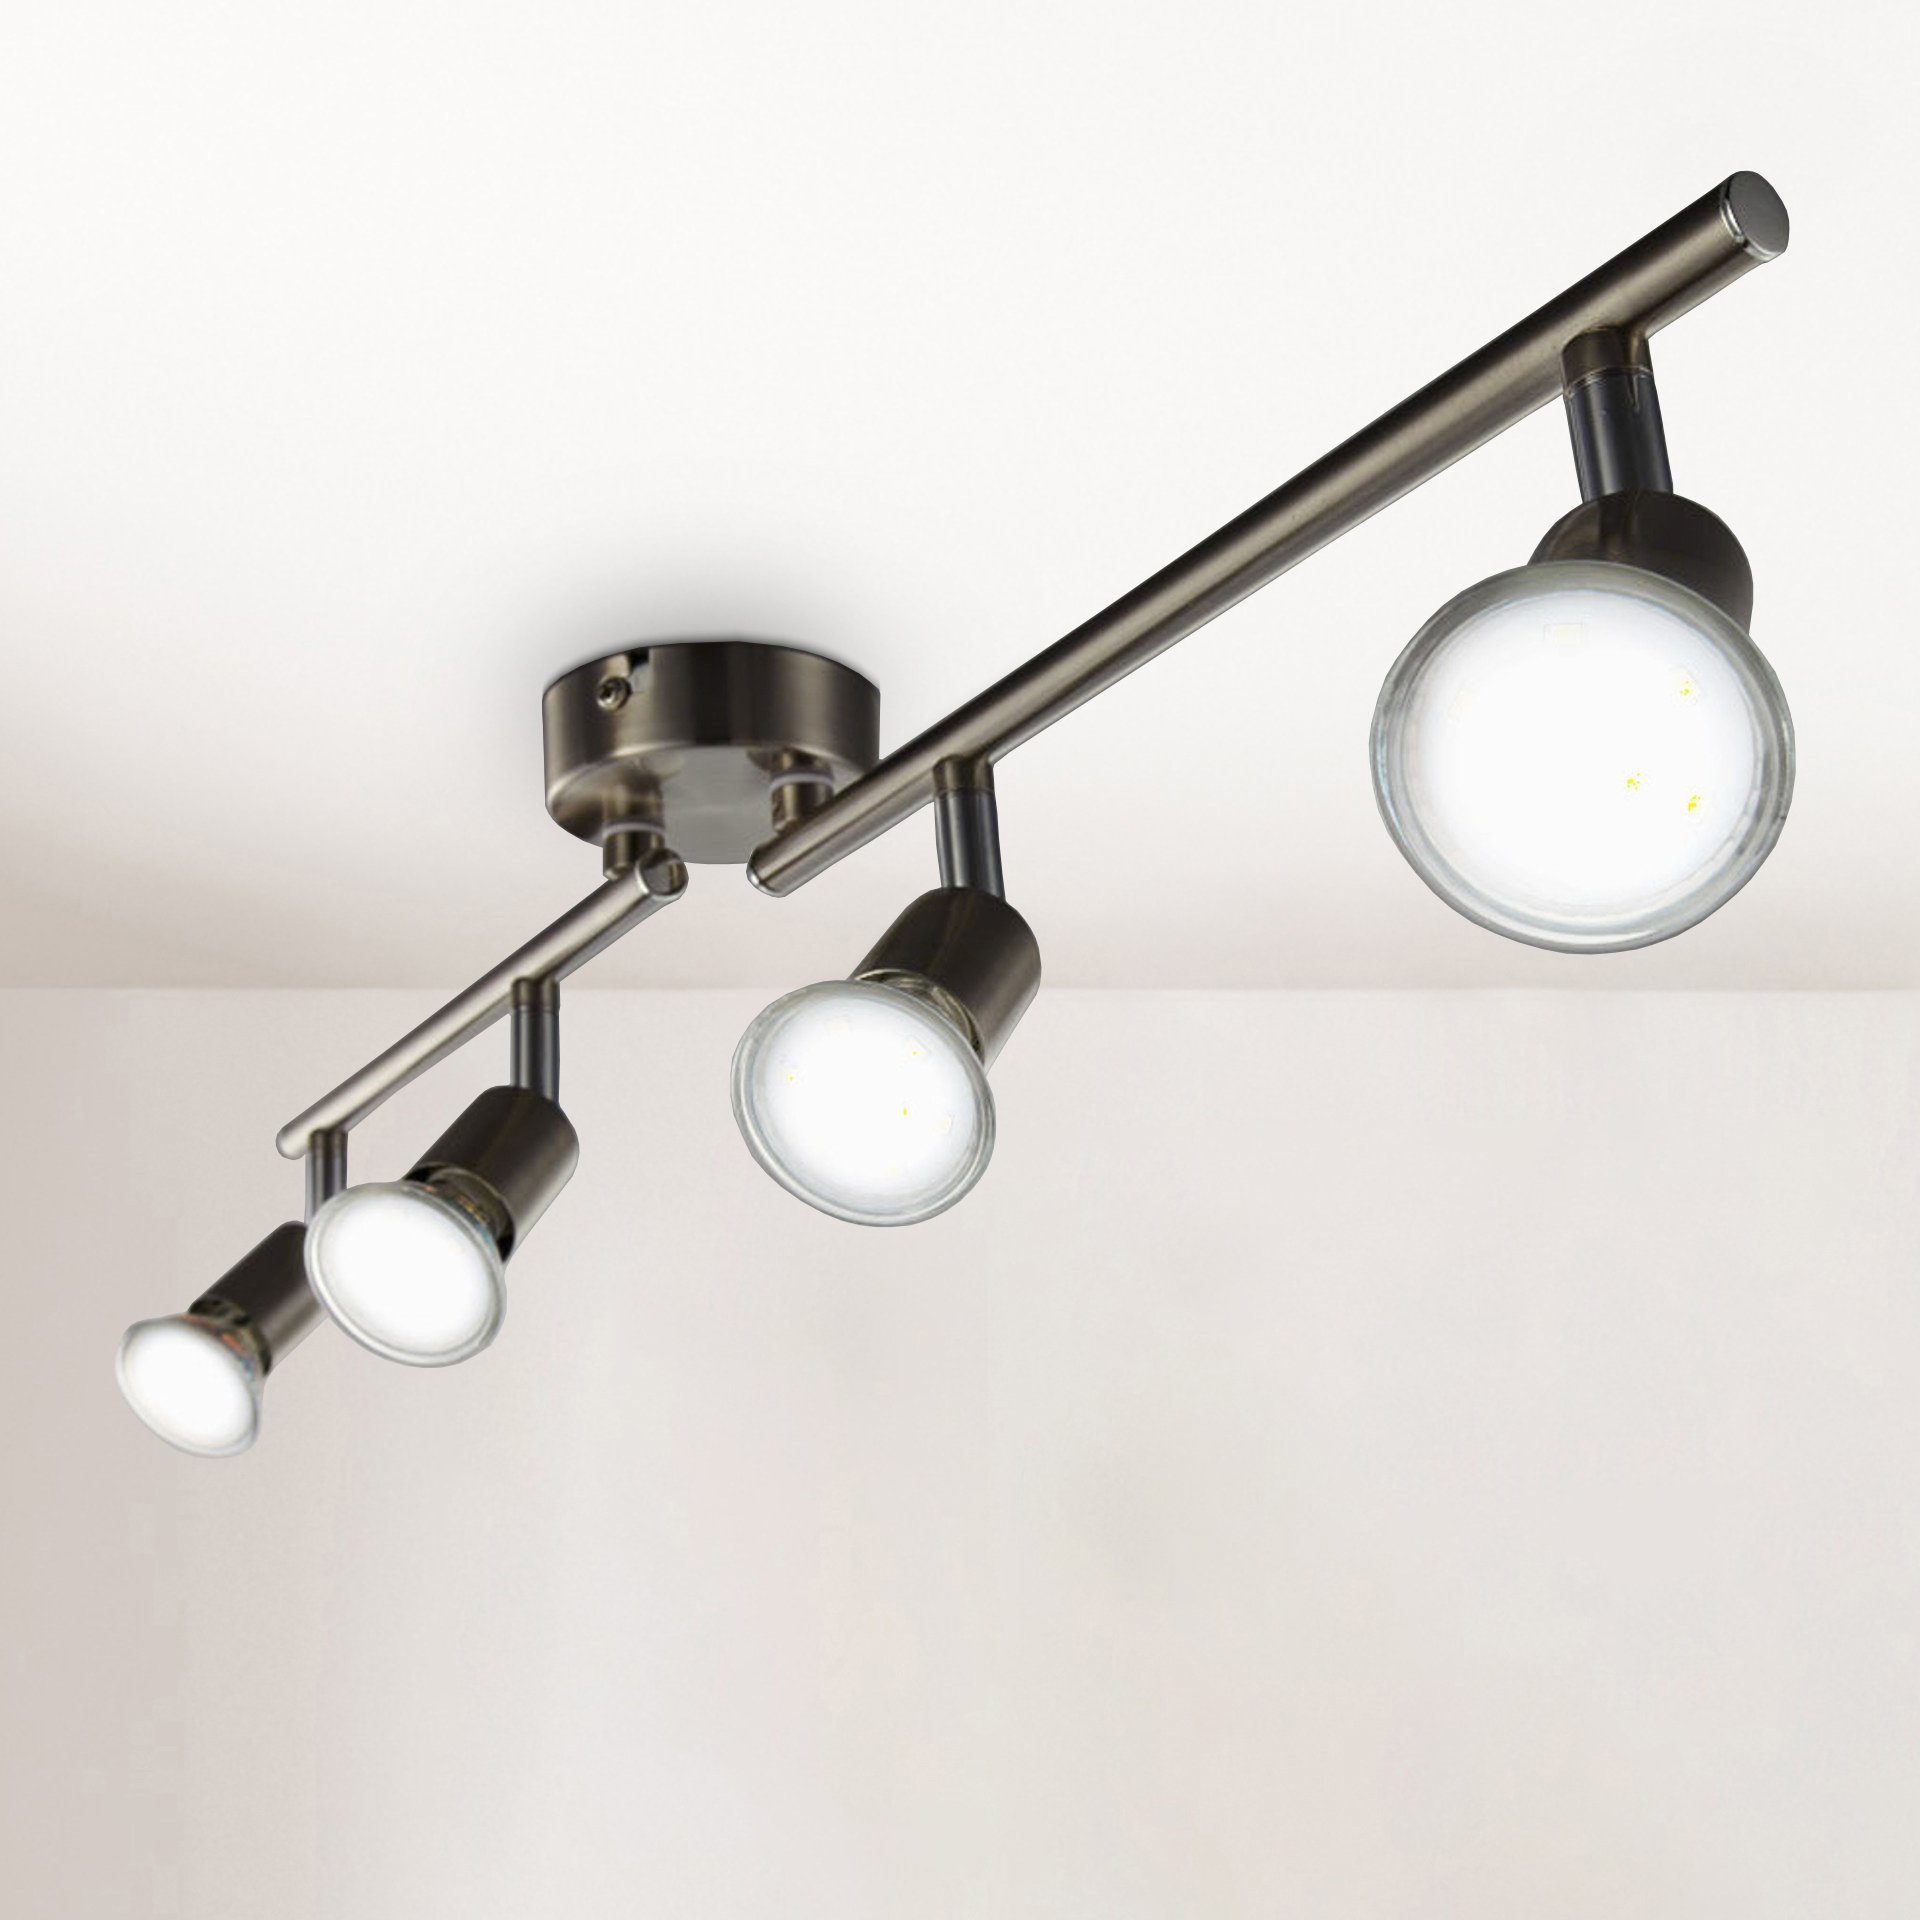 Luxus LED Decken Strahler Leuchte Ess Zimmer Licht Schiene Spot Lampe schwenkbar 